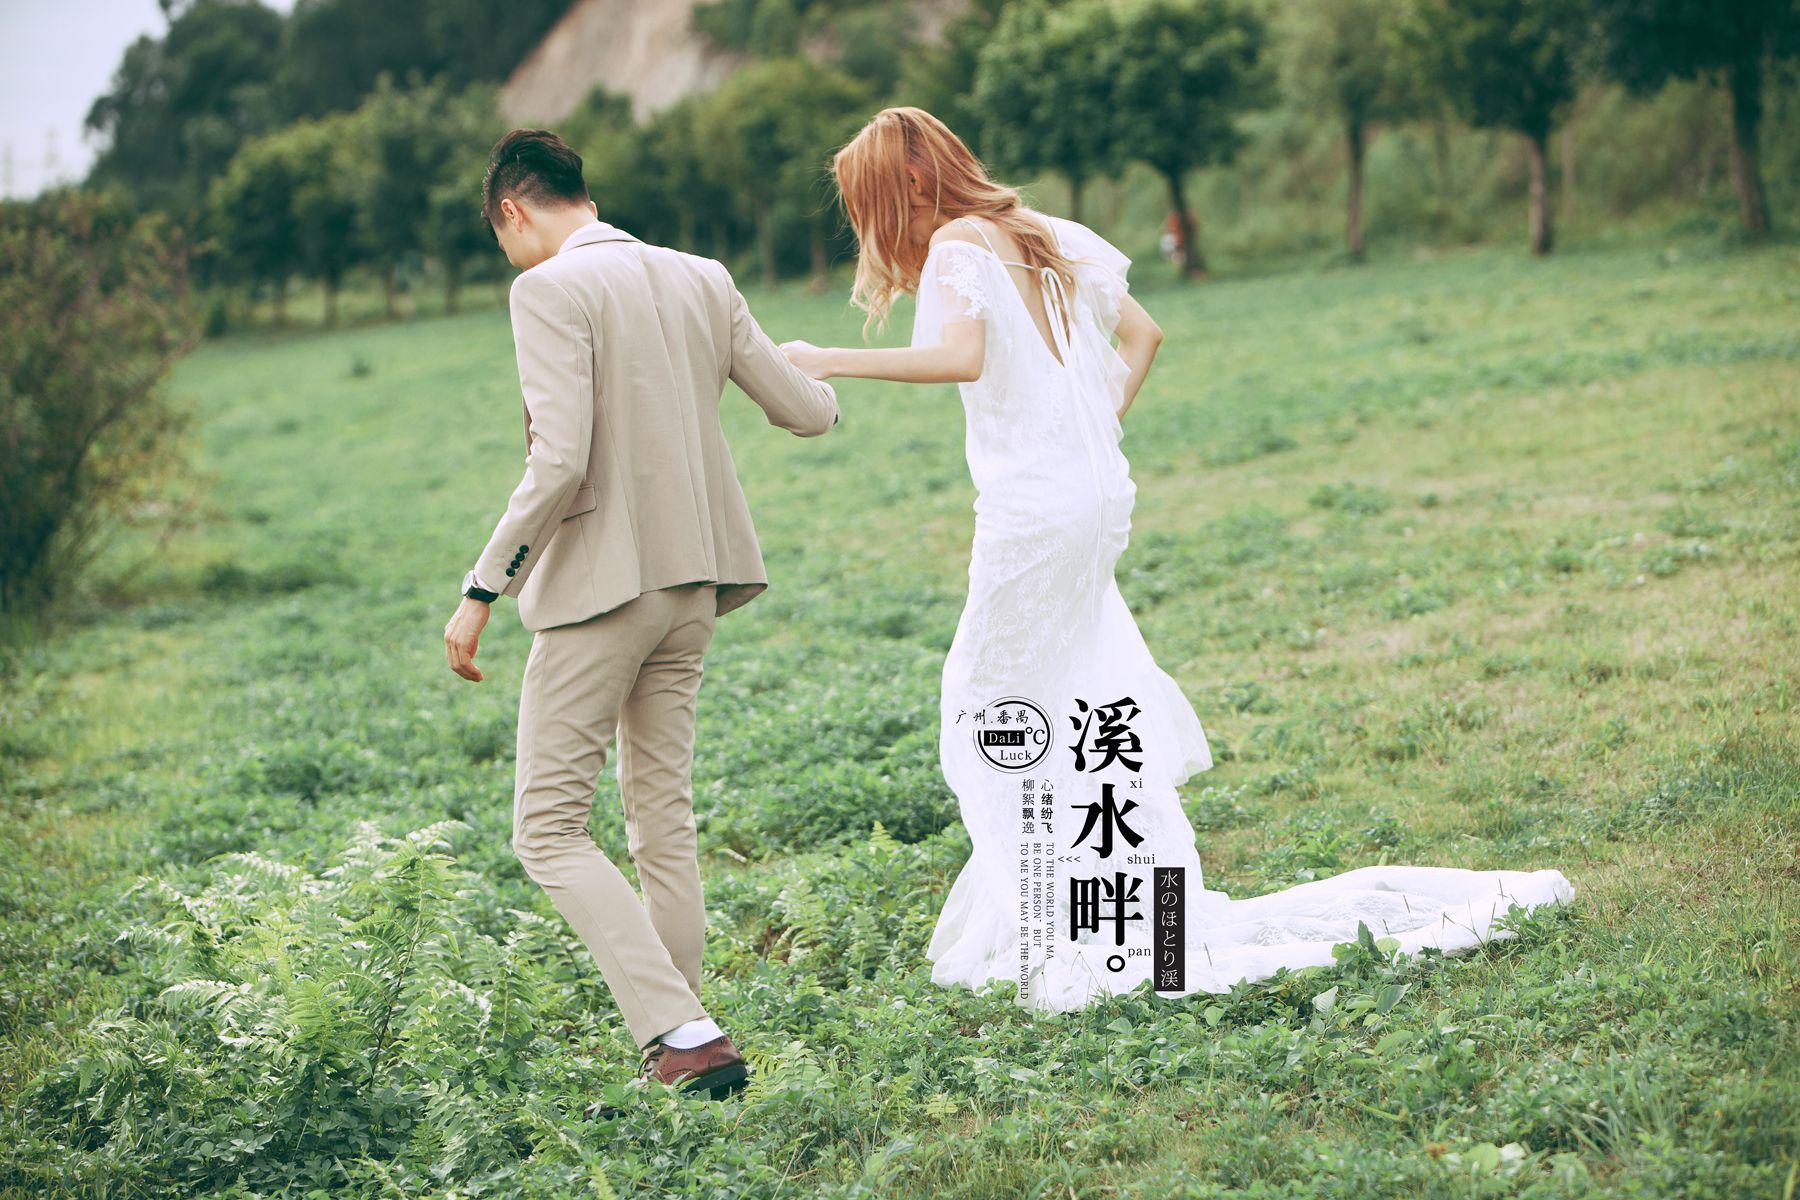 2017年7月广州婚纱照,韶关婚纱照,婚纱照图片